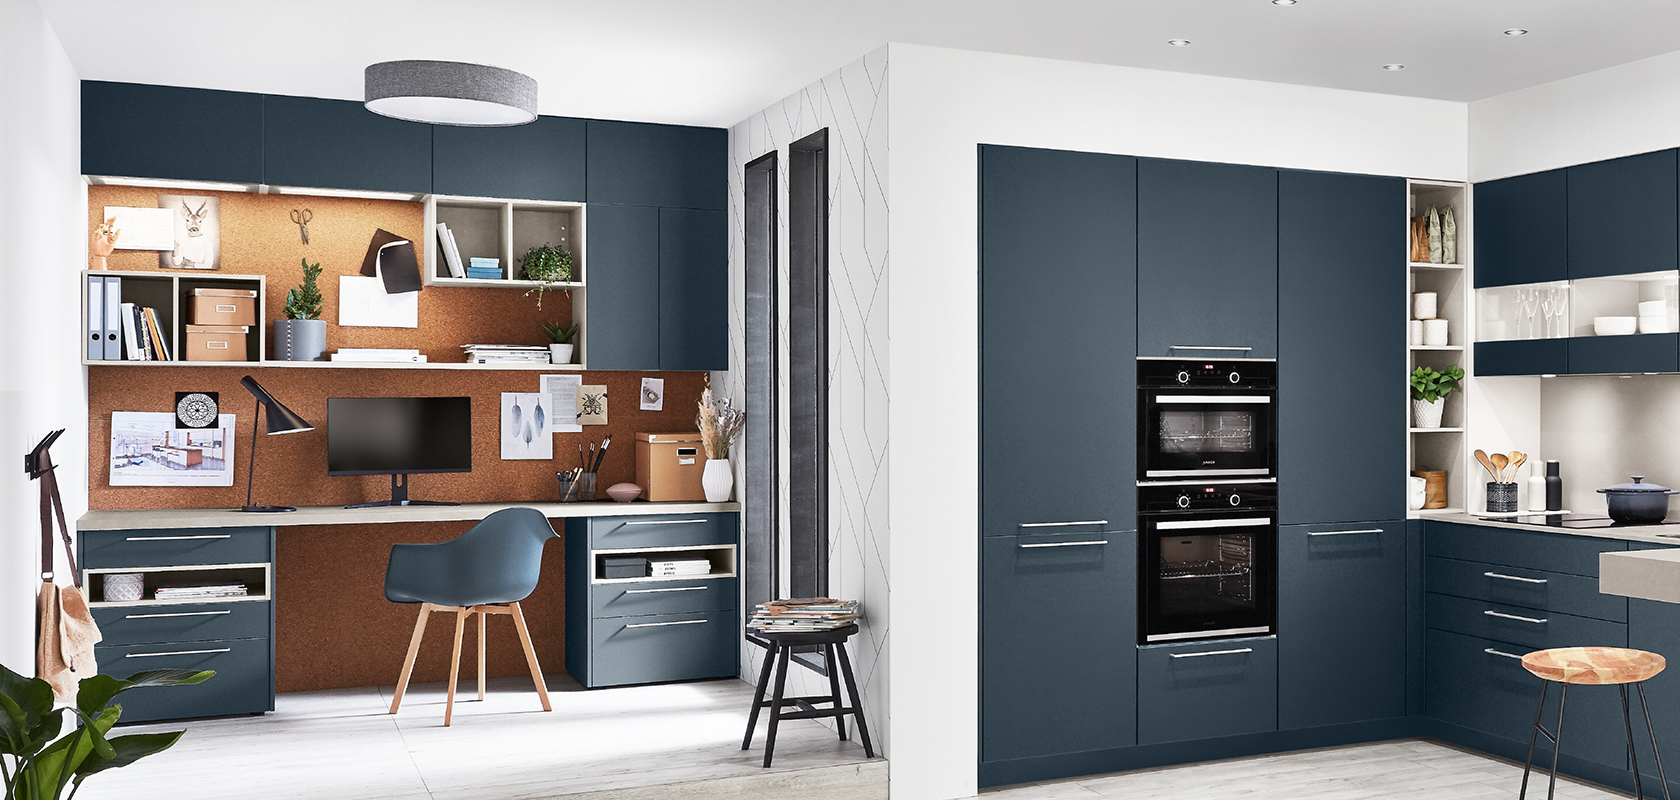 Coin bureau élégant dans une cuisine avec un bureau contemporain, des étagères et des armoires minimalistes dans une finition bleue et bois coordonnée.